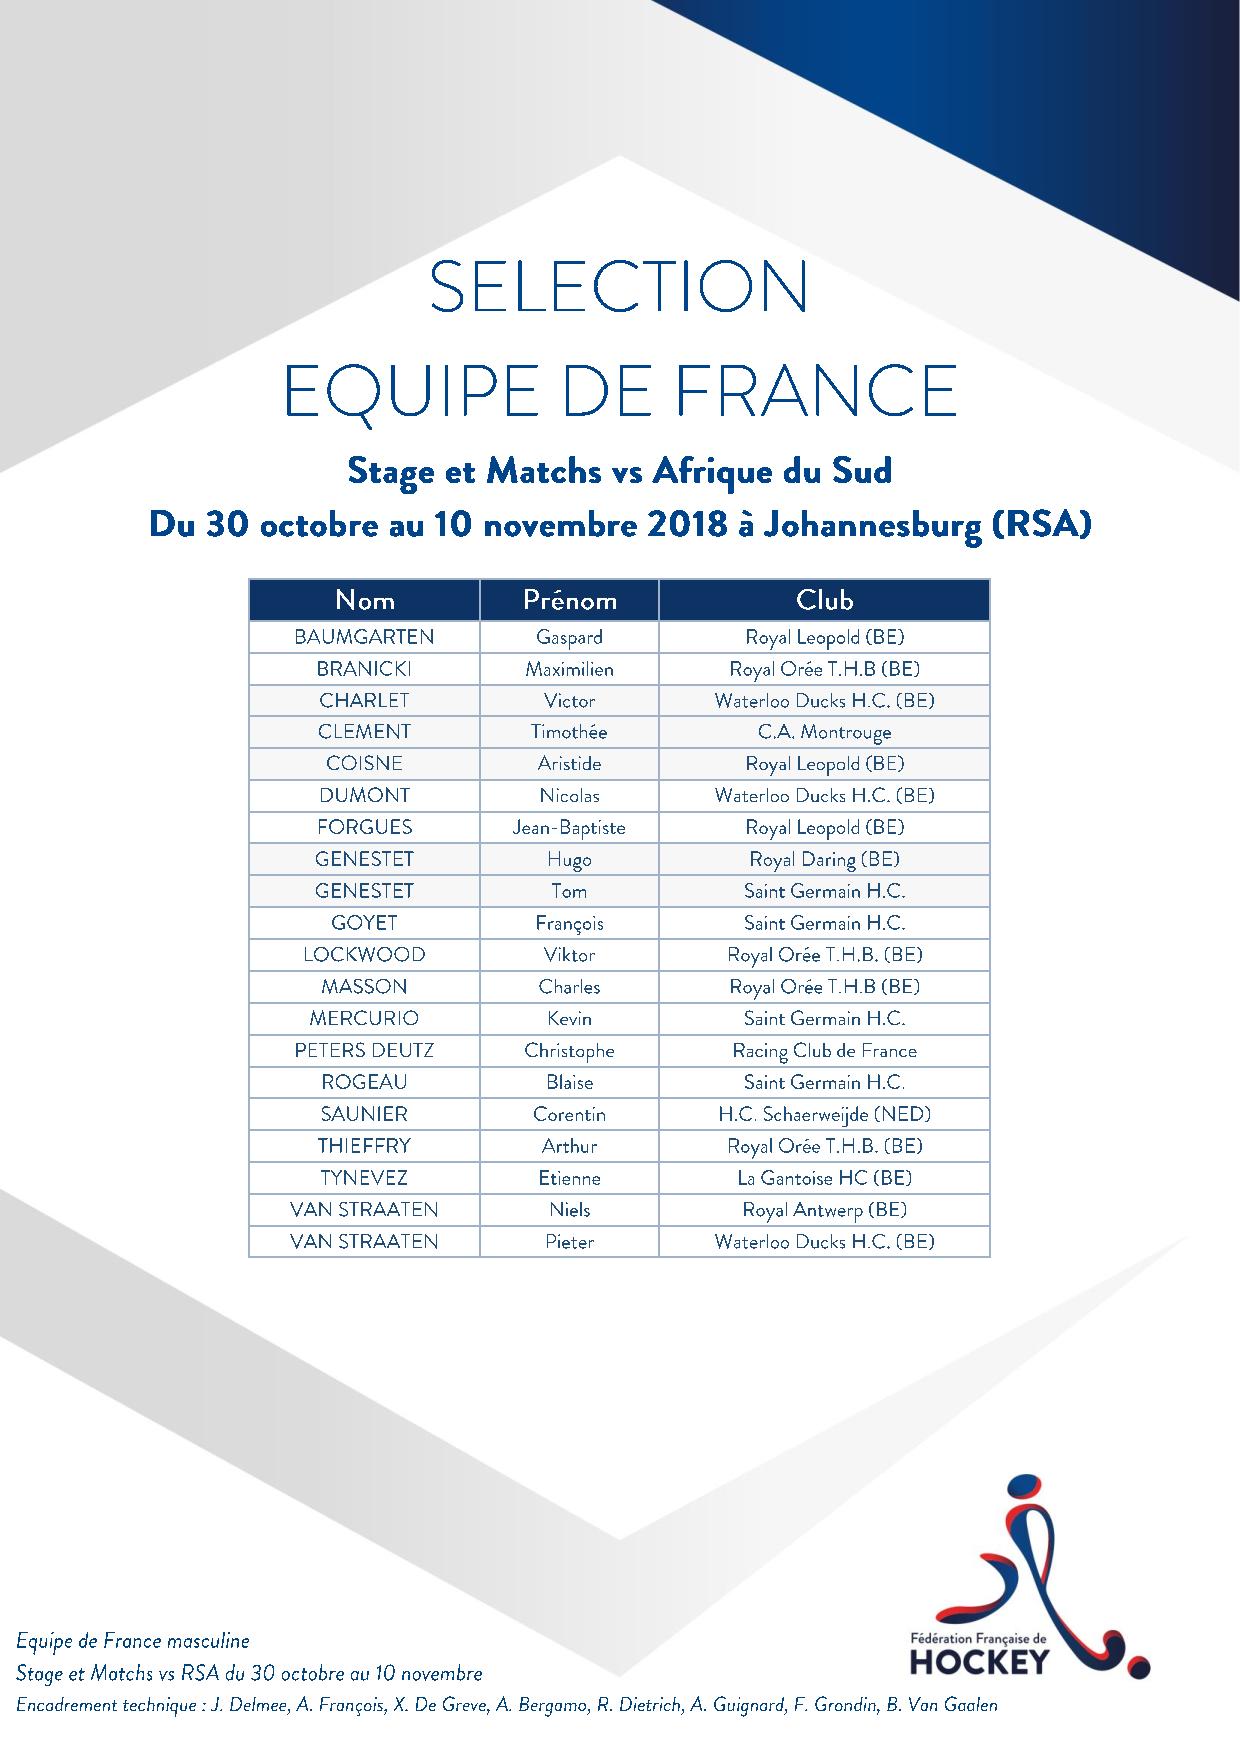 SELECTION EQUIPE DE FRANCE Stage et Matchs 1du 30 octobre au 10 novembre 2018 vs RSA